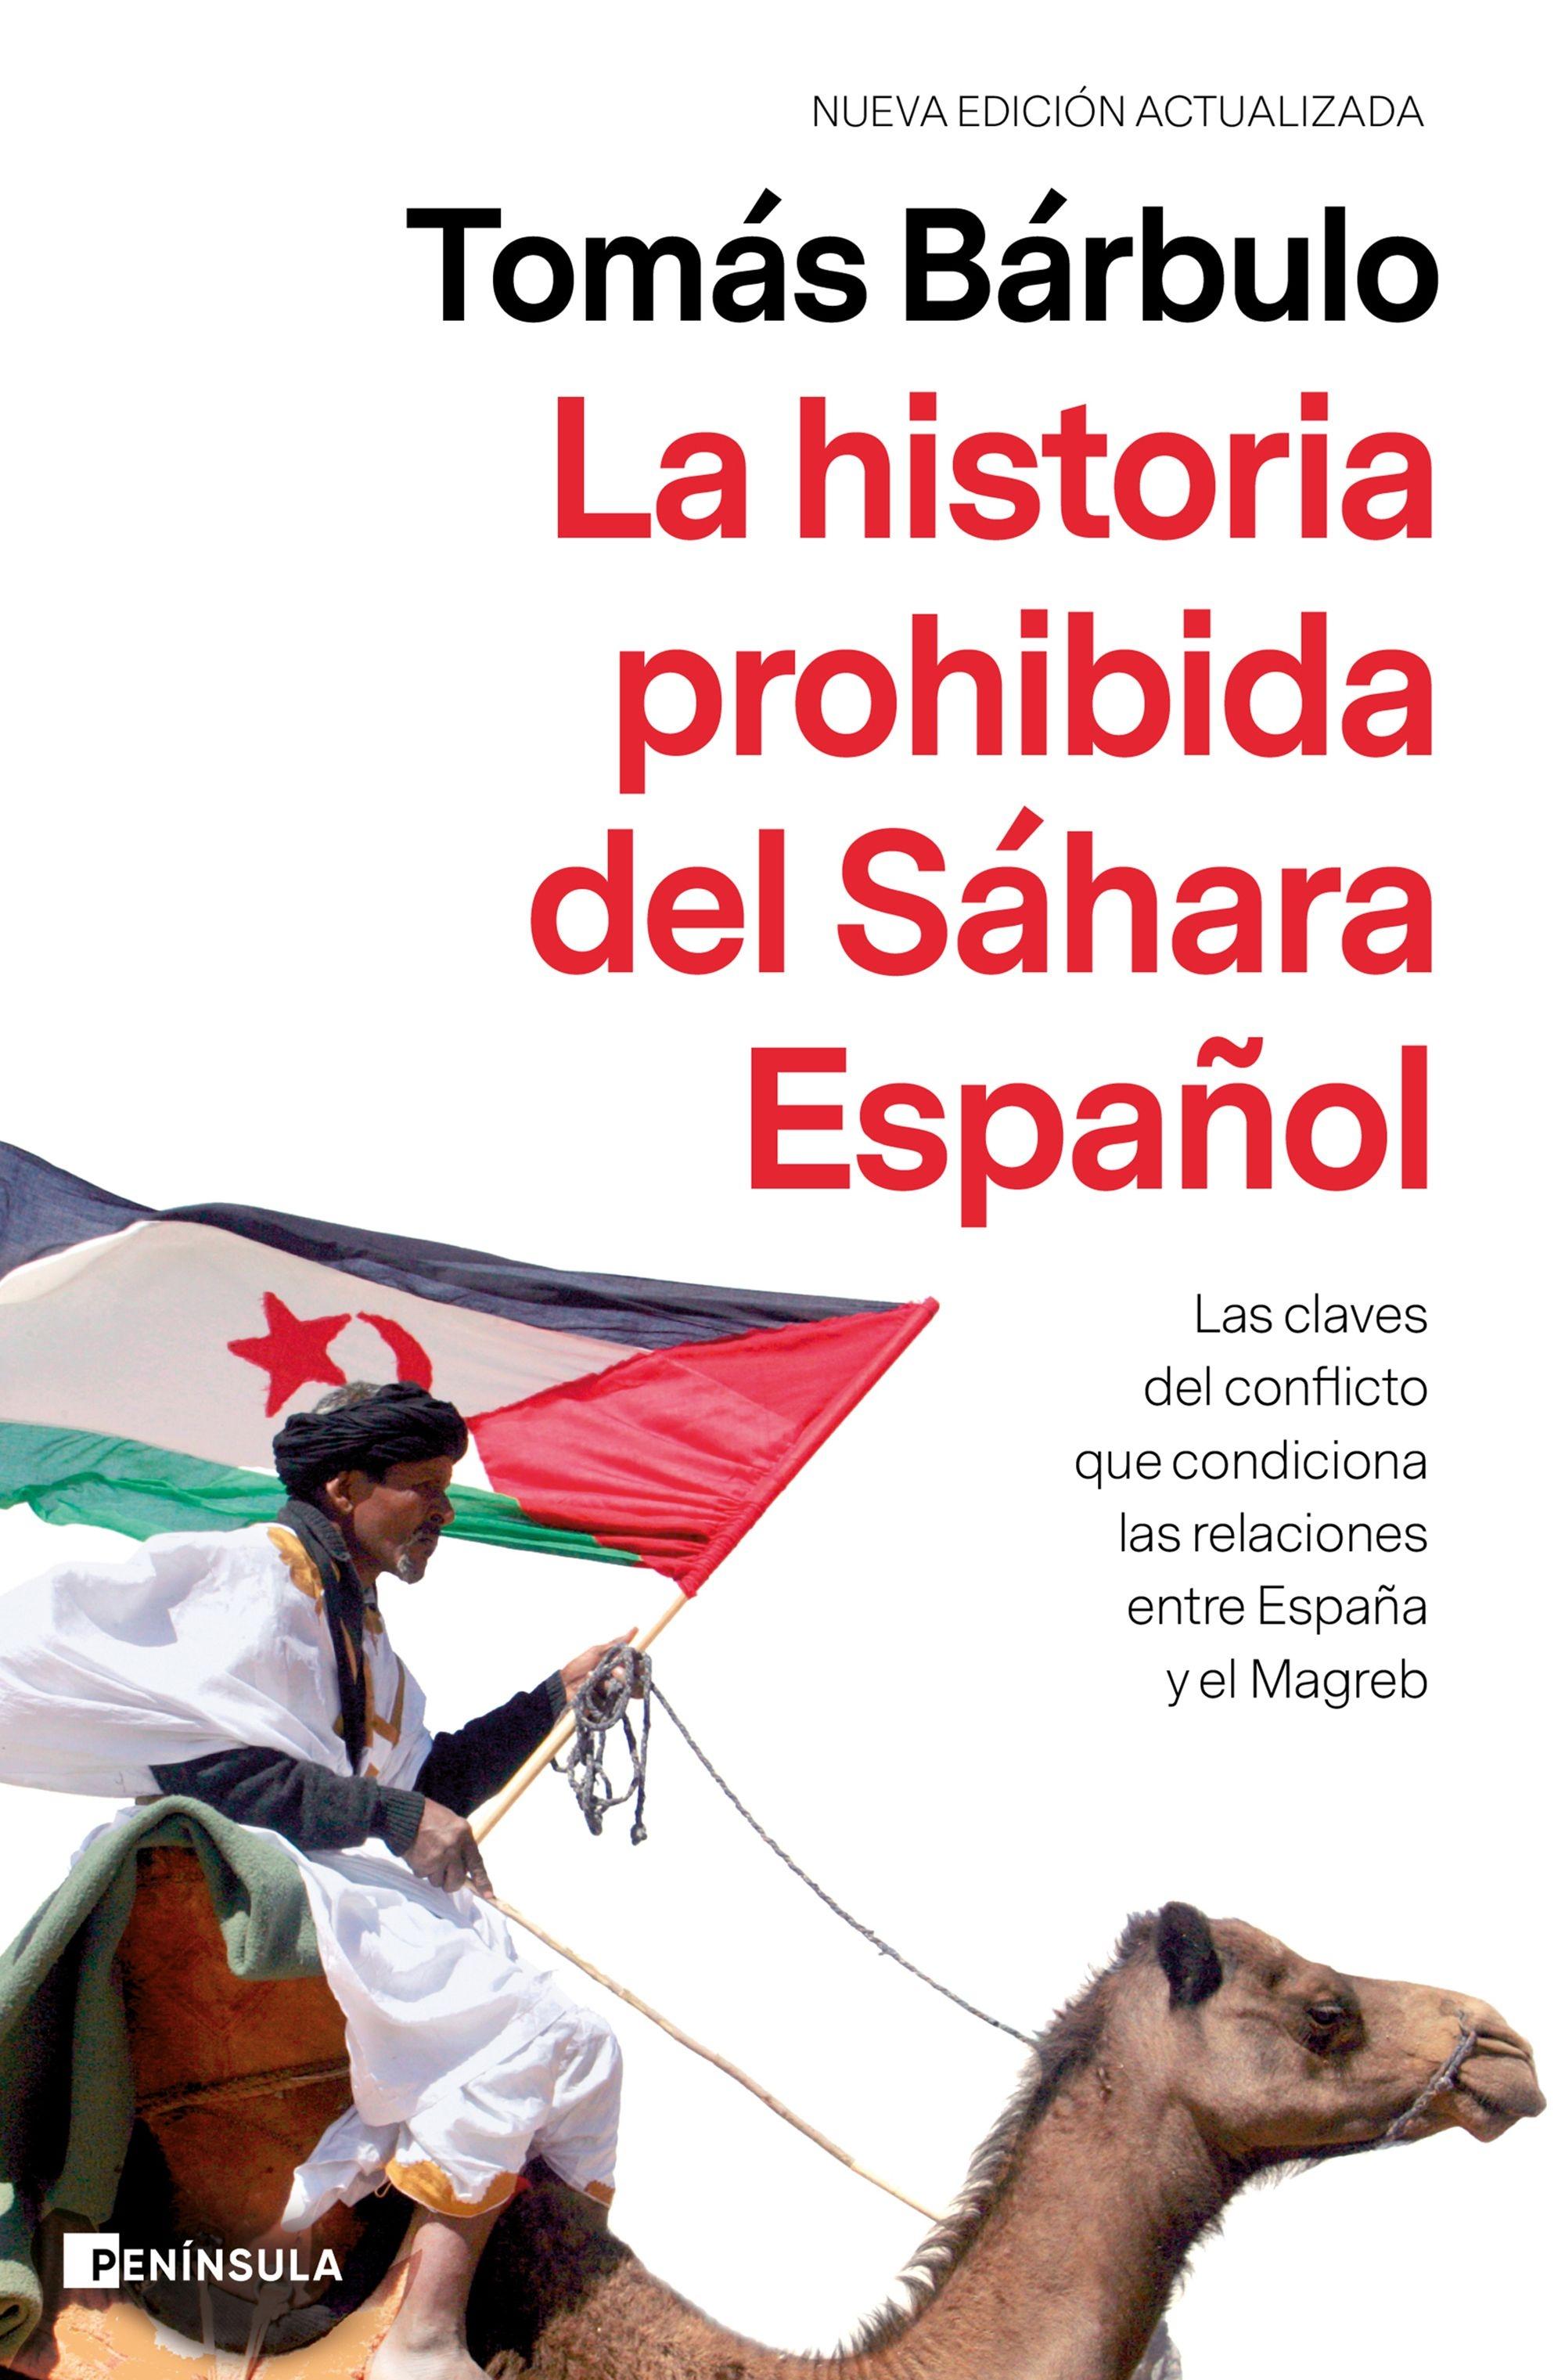 La historia prohibida del Sáhara Español "Las claves del conflicto que condiciona las relaciones entre España y el Magreb"